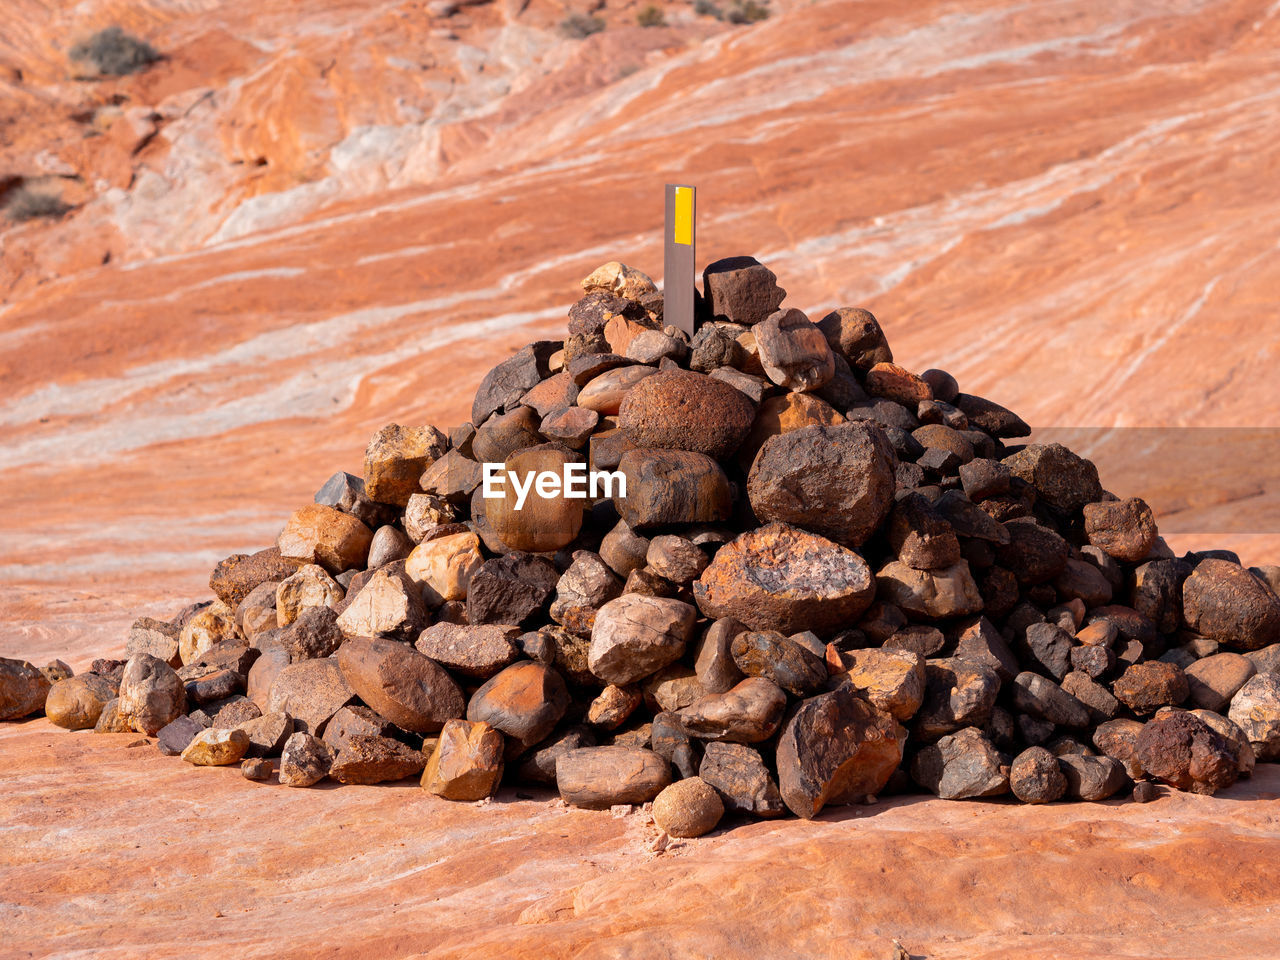 VIEW OF ROCKS ON DESERT